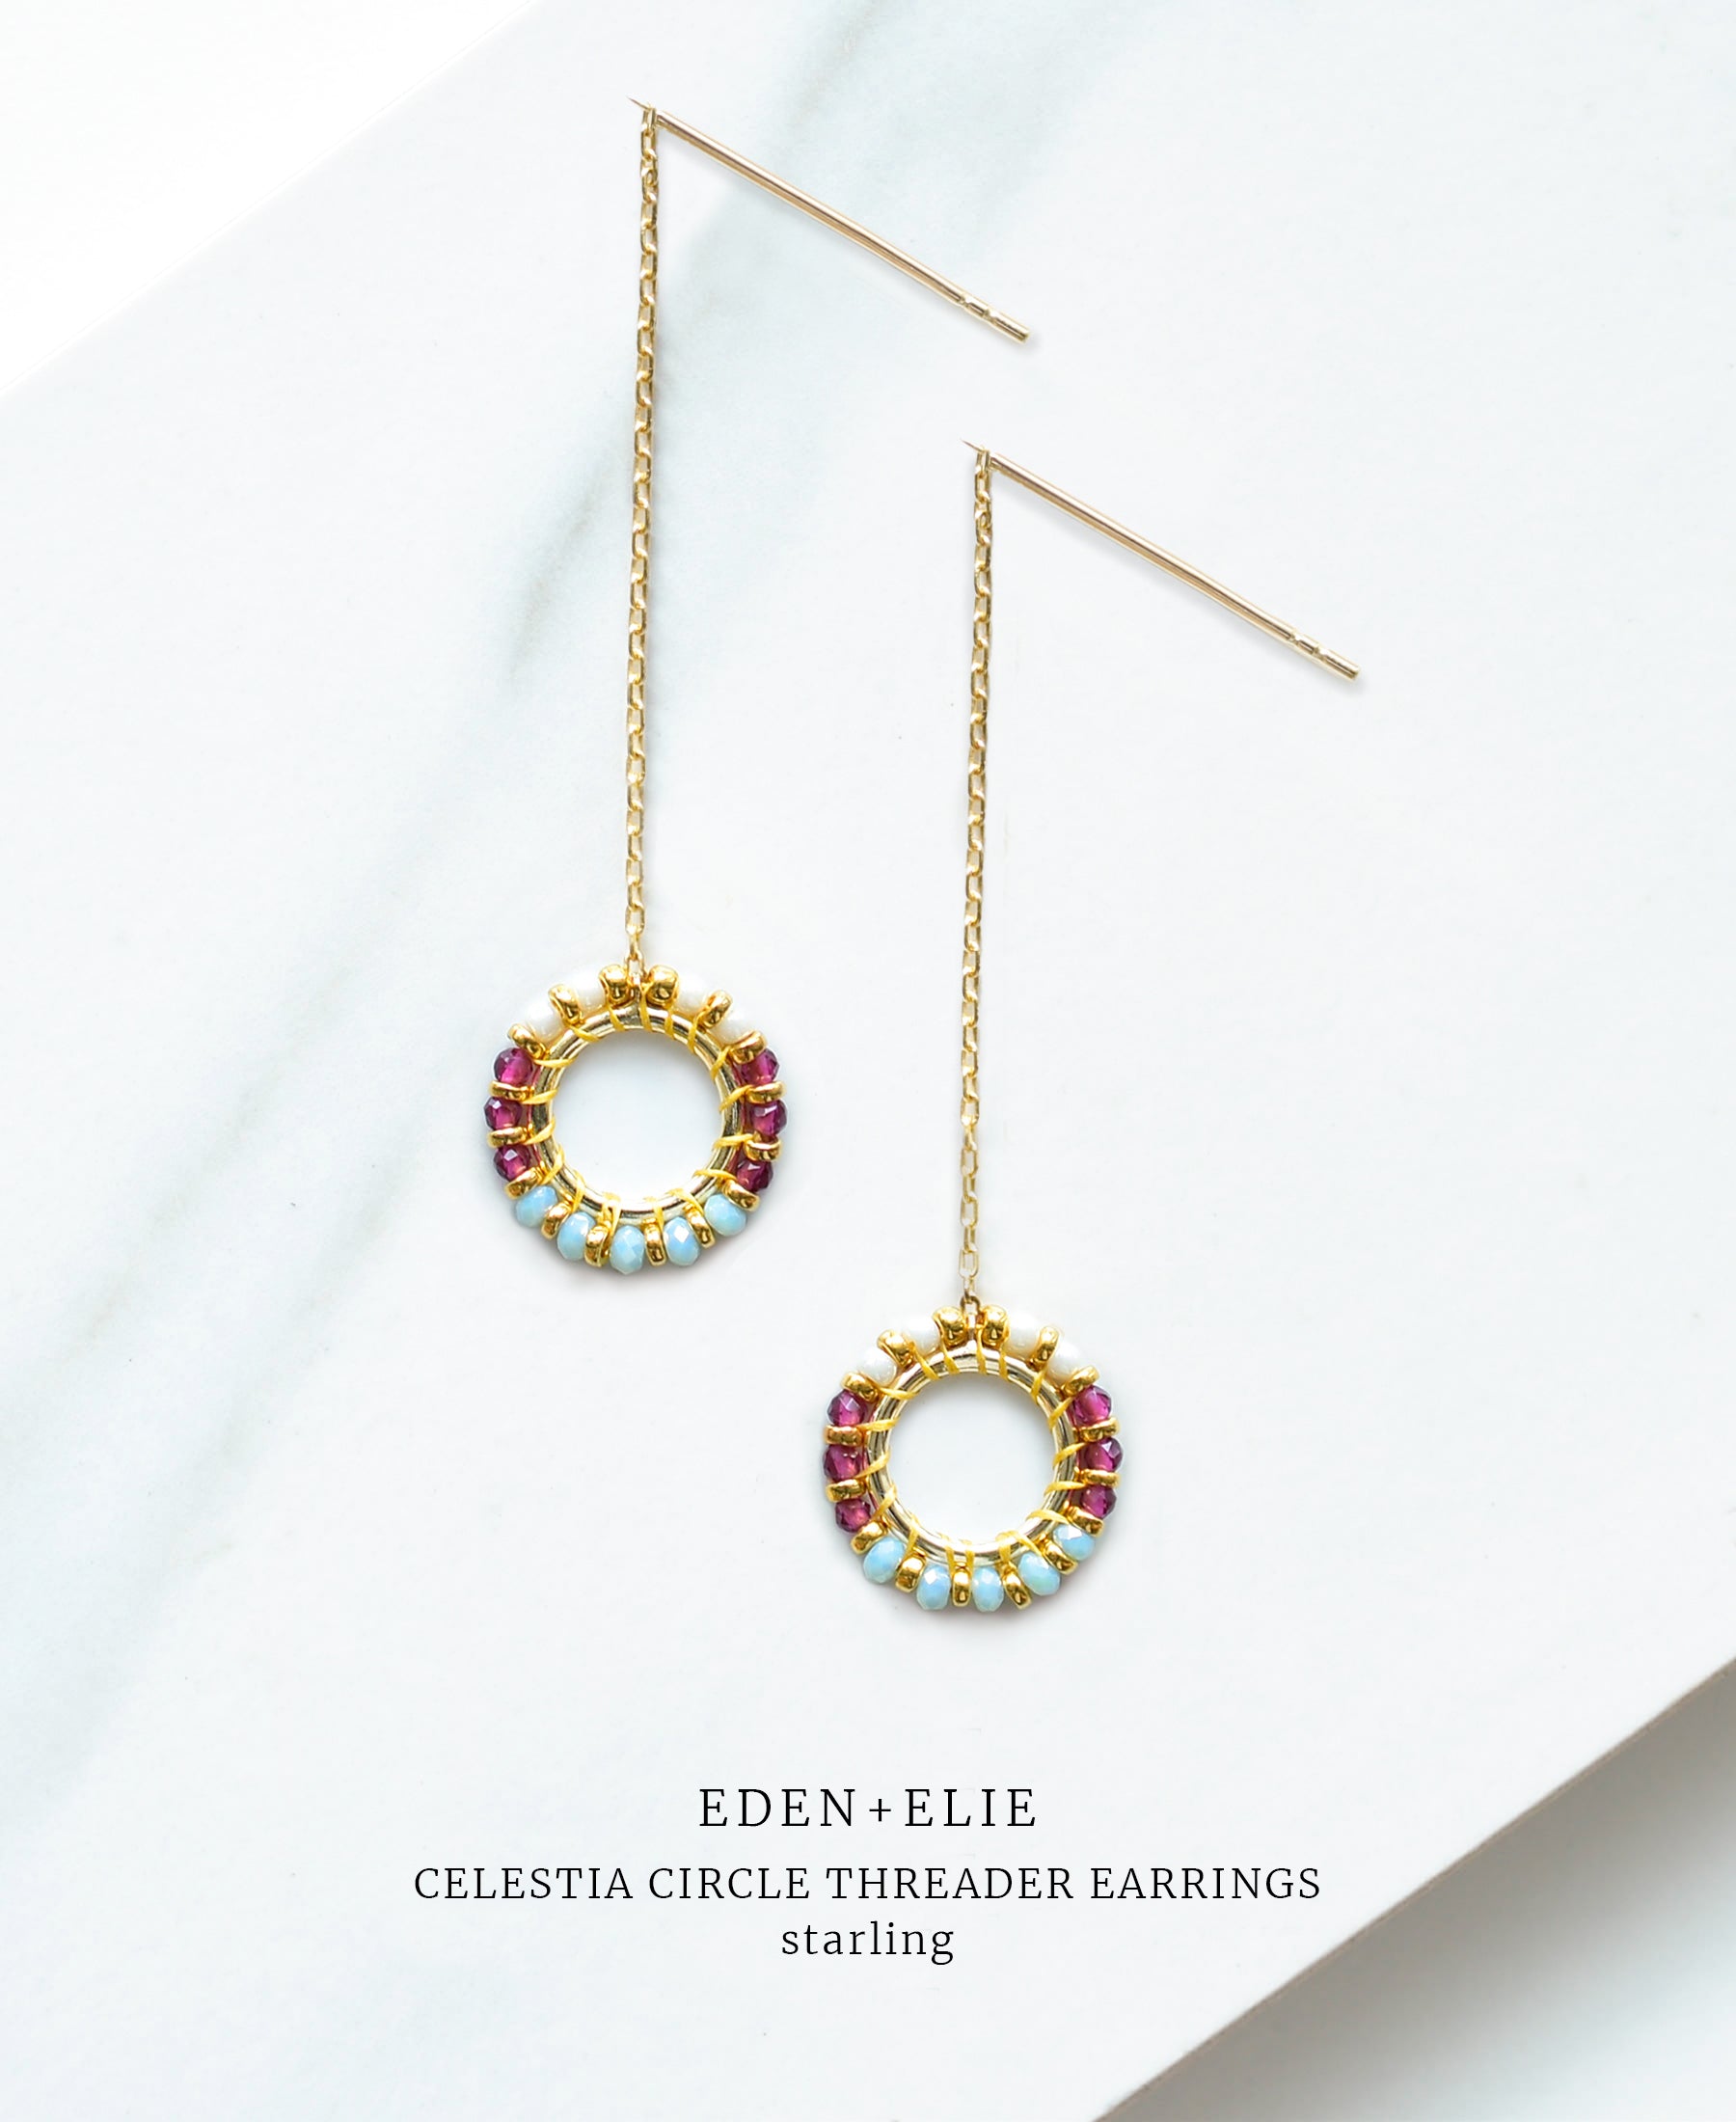 EDEN + ELIE Celestia Circle Threader Earrings - Starling